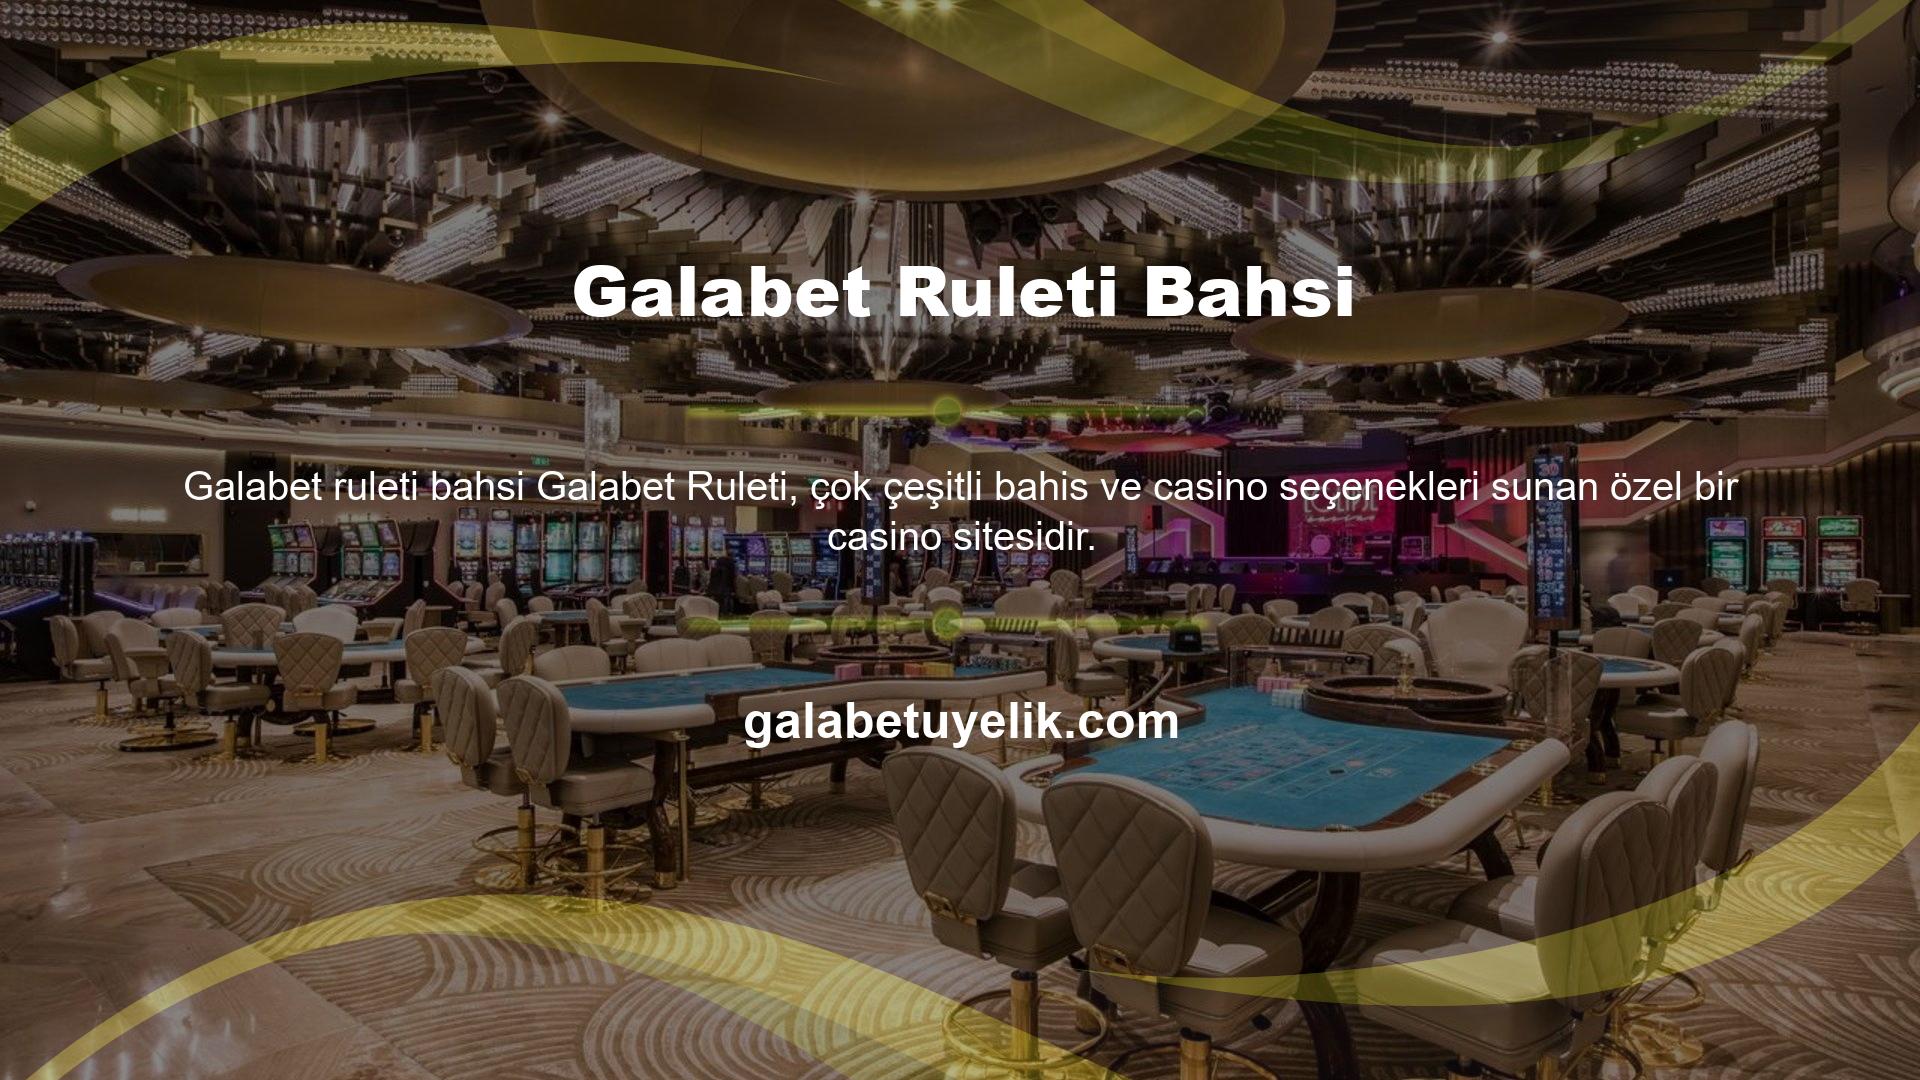 Galabet, Türk yayıncılık sahnesine girdiğinden beri çok sayıda oyuncuyu kendine çekmiştir ve aktif bir casino ve casino sitesidir